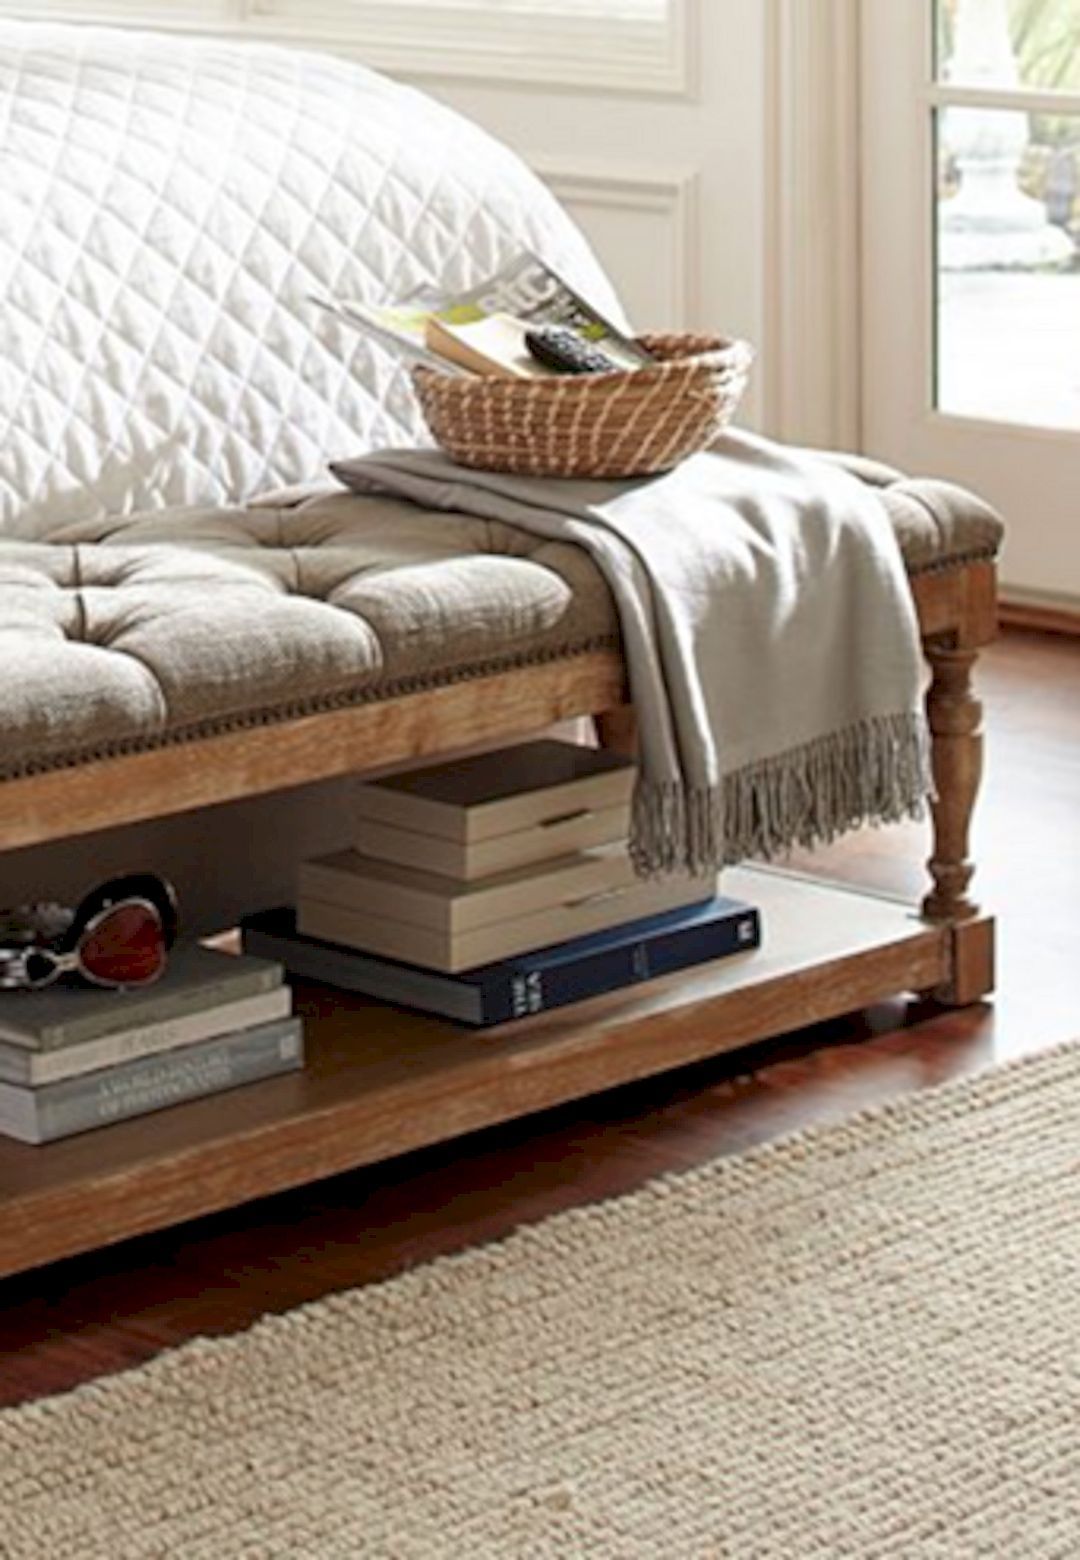 Bedroom Storage Bench: An Elegant Solution For Clutter